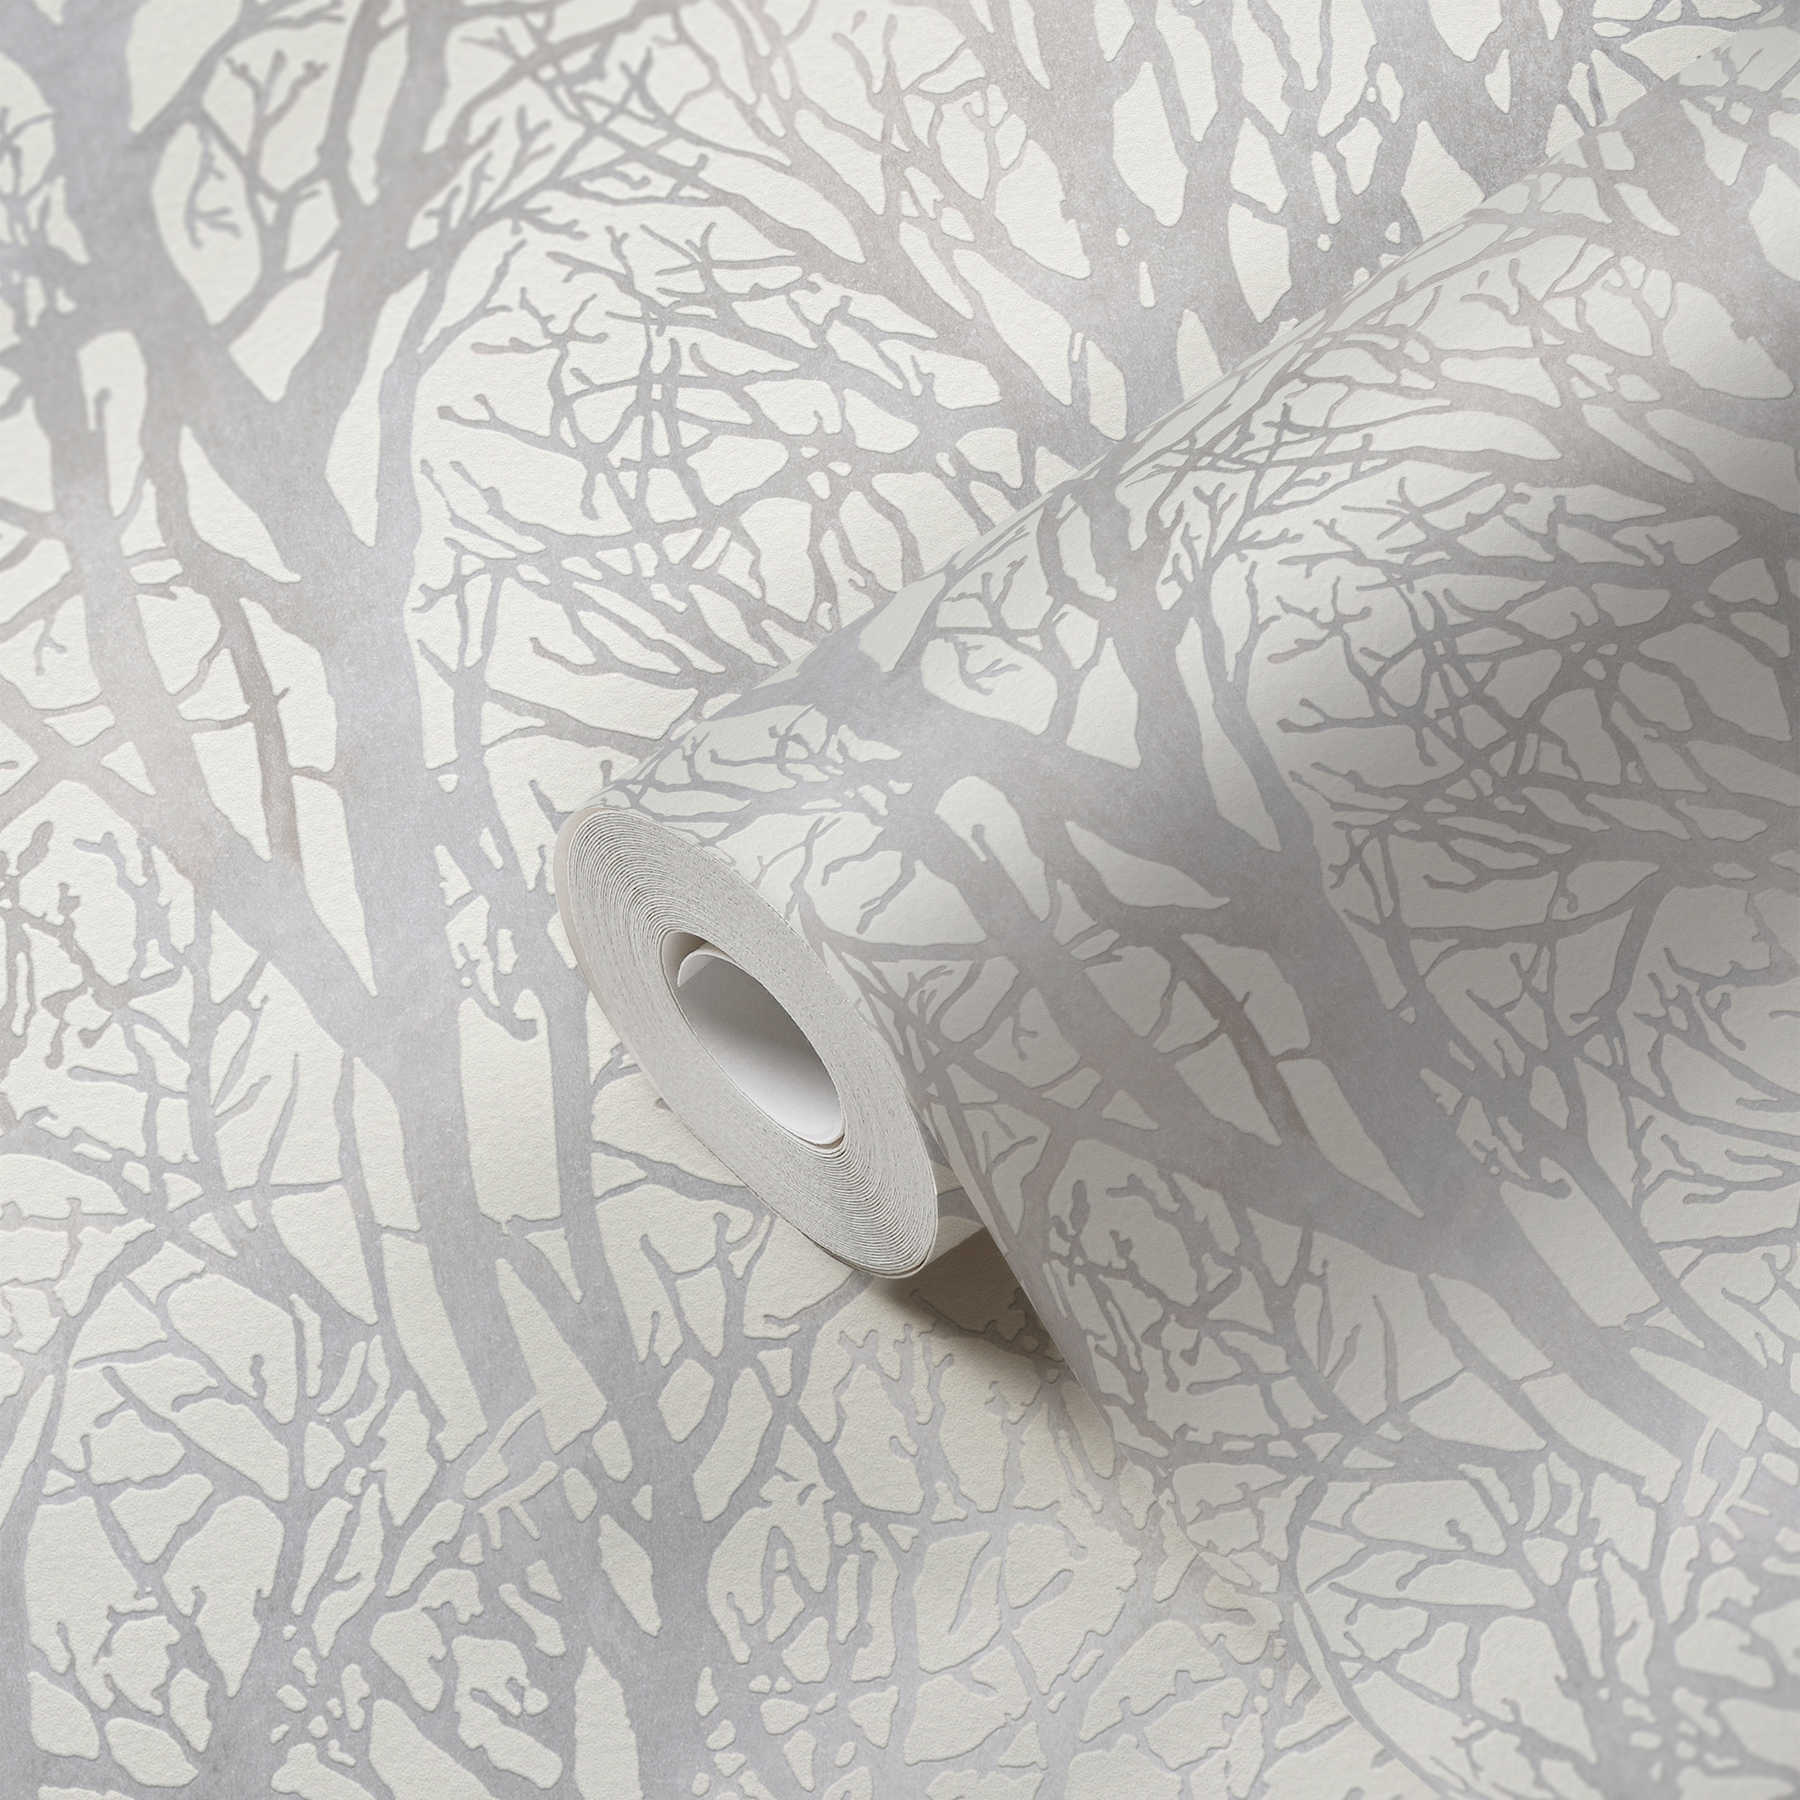             Papier peint gris argenté avec motif de branches et effet métallique - blanc, argenté
        